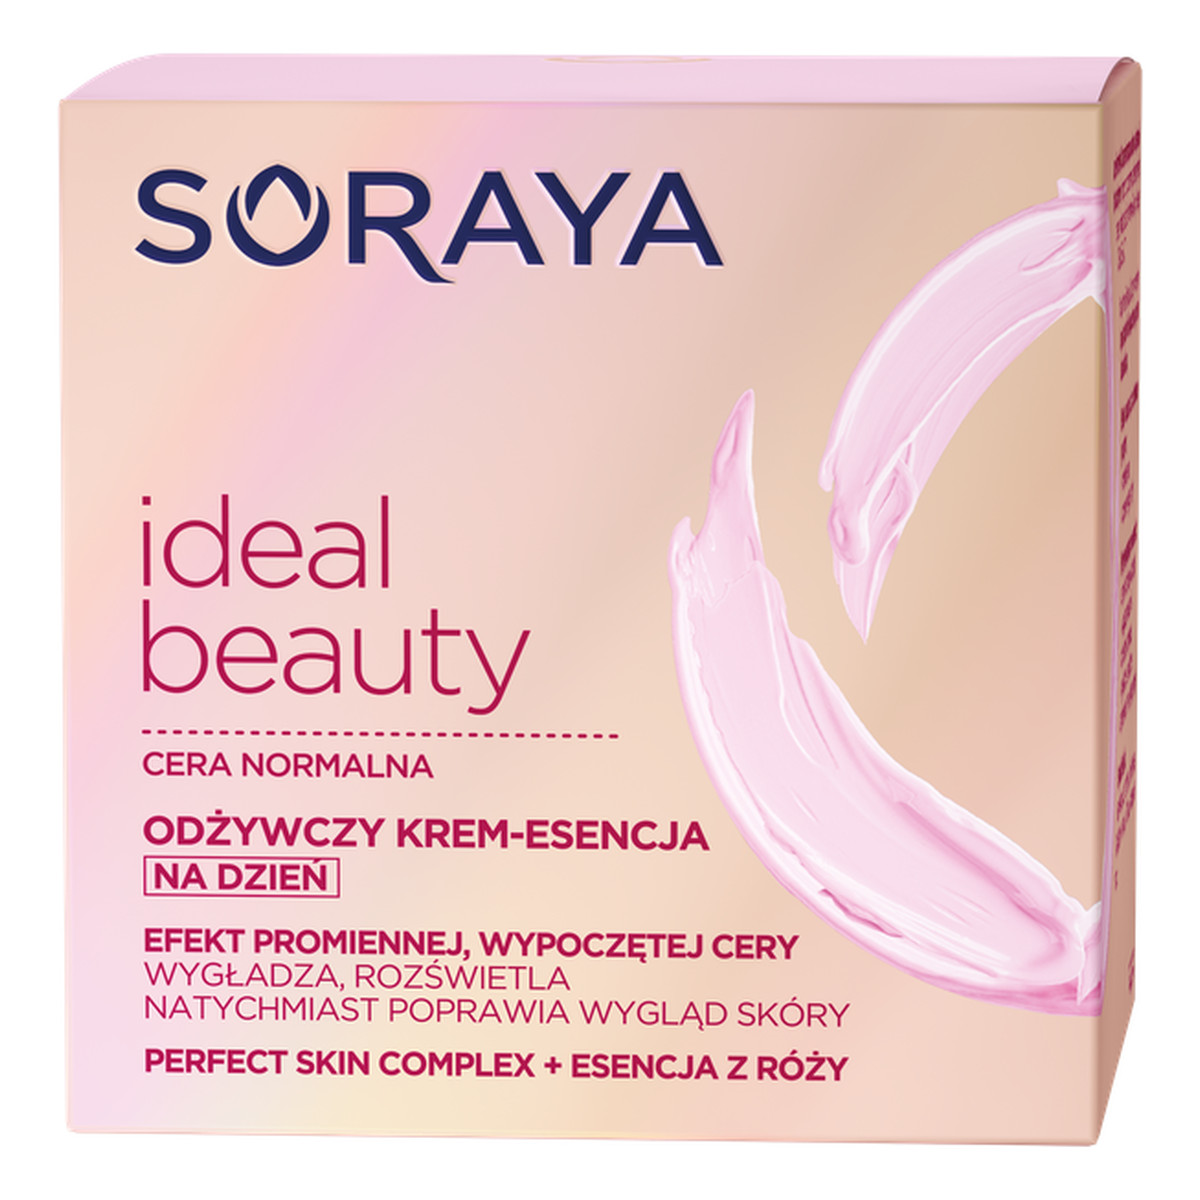 Soraya Cera Normalna Ideal Beauty Odżywczy Krem - Esencja Do Twarzy Na Dzień 50ml